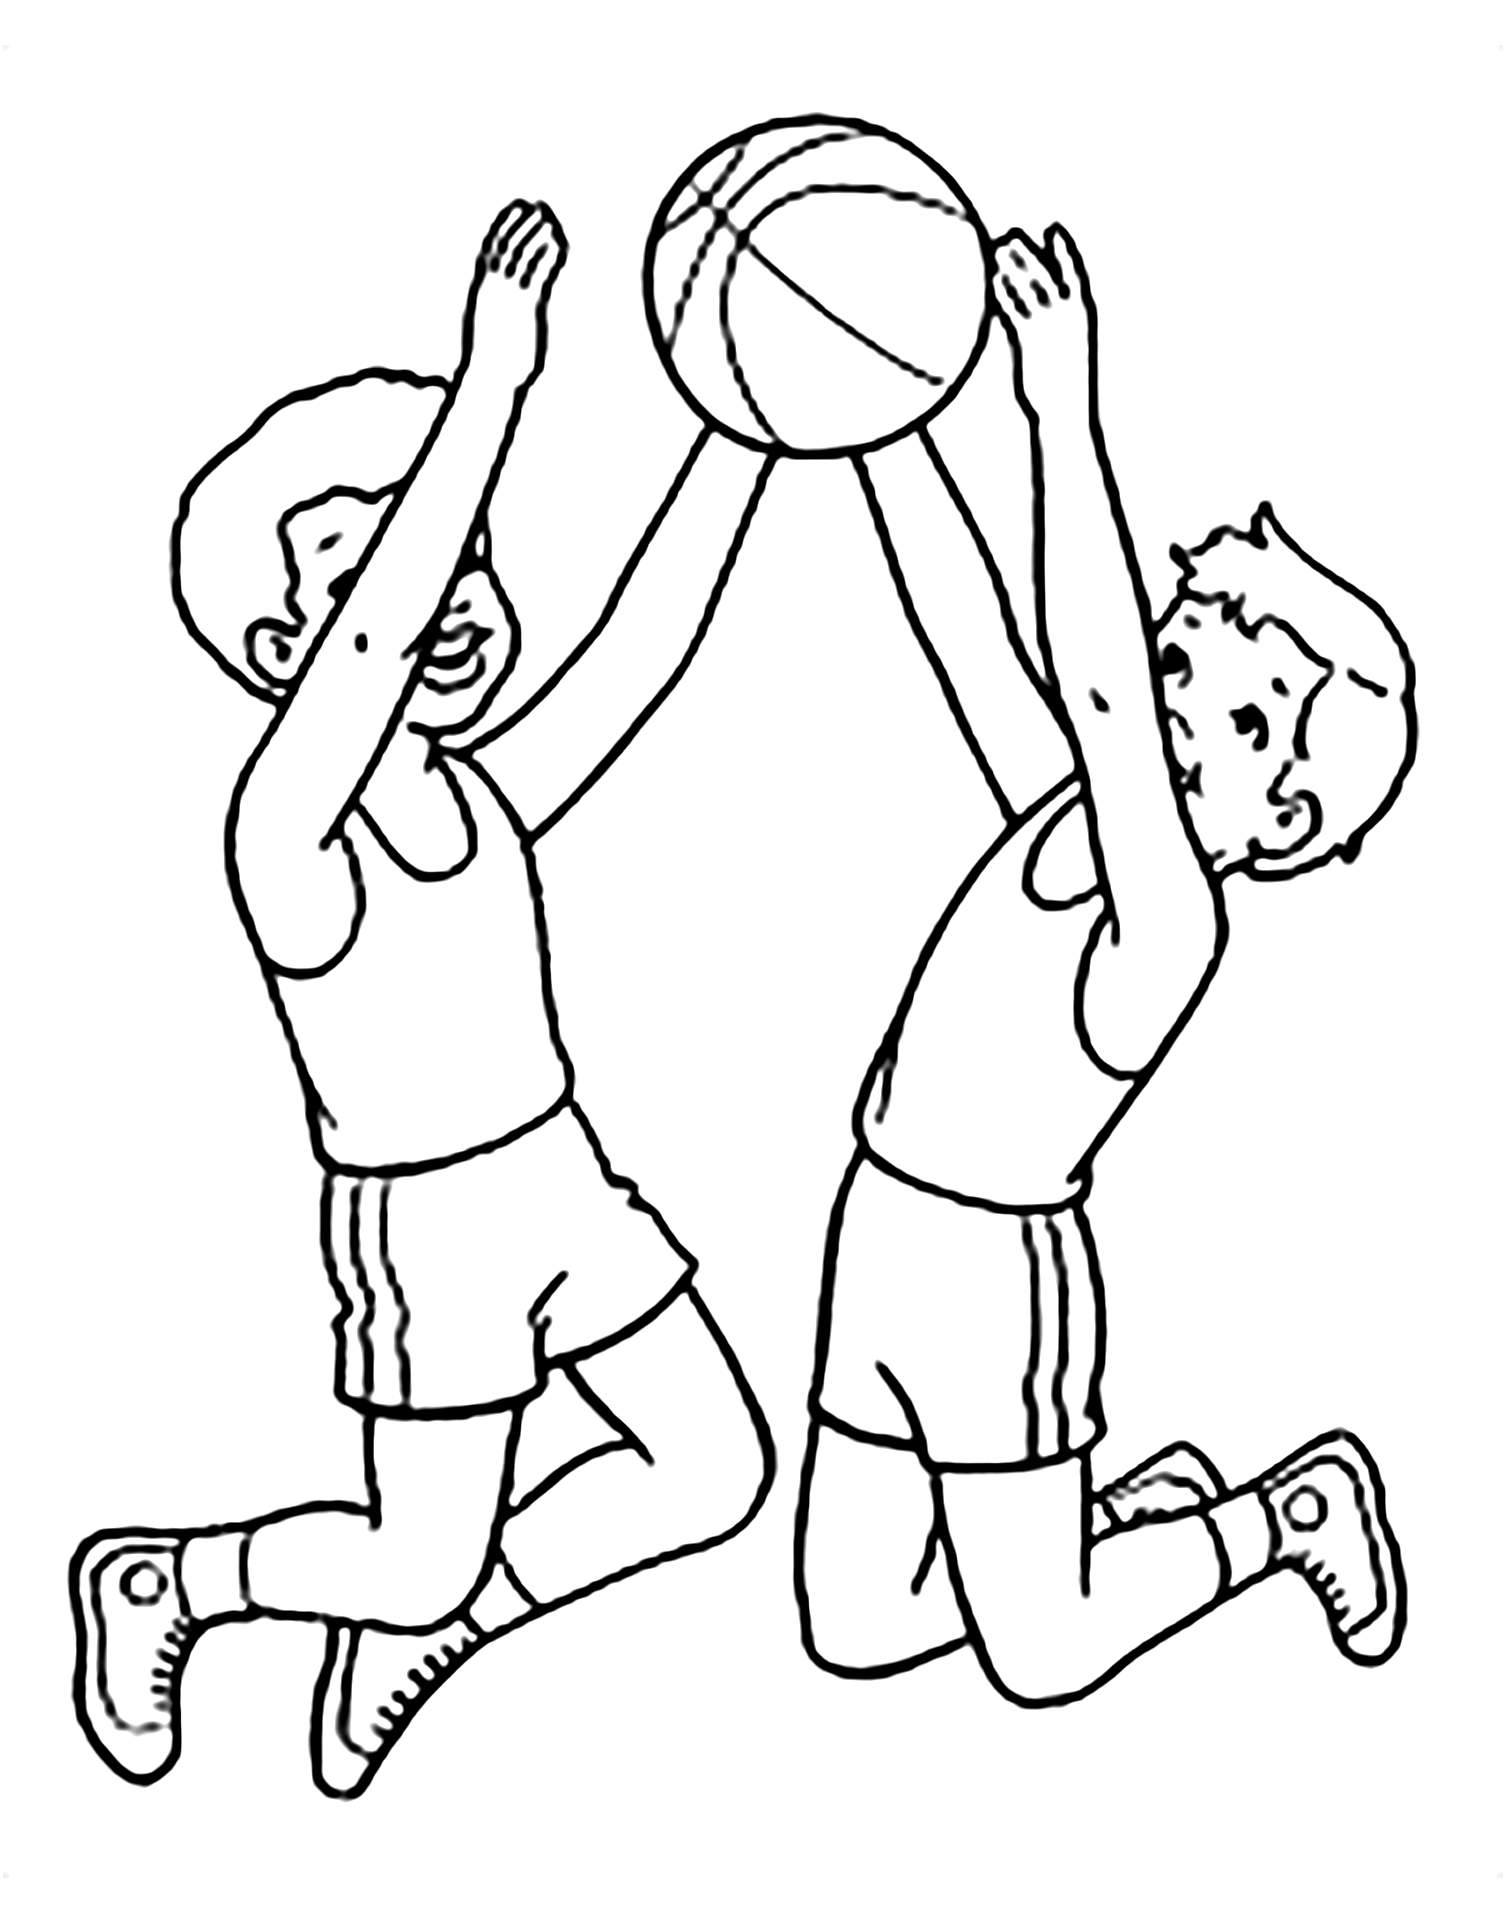 Coloriage de basketball facile pour enfants